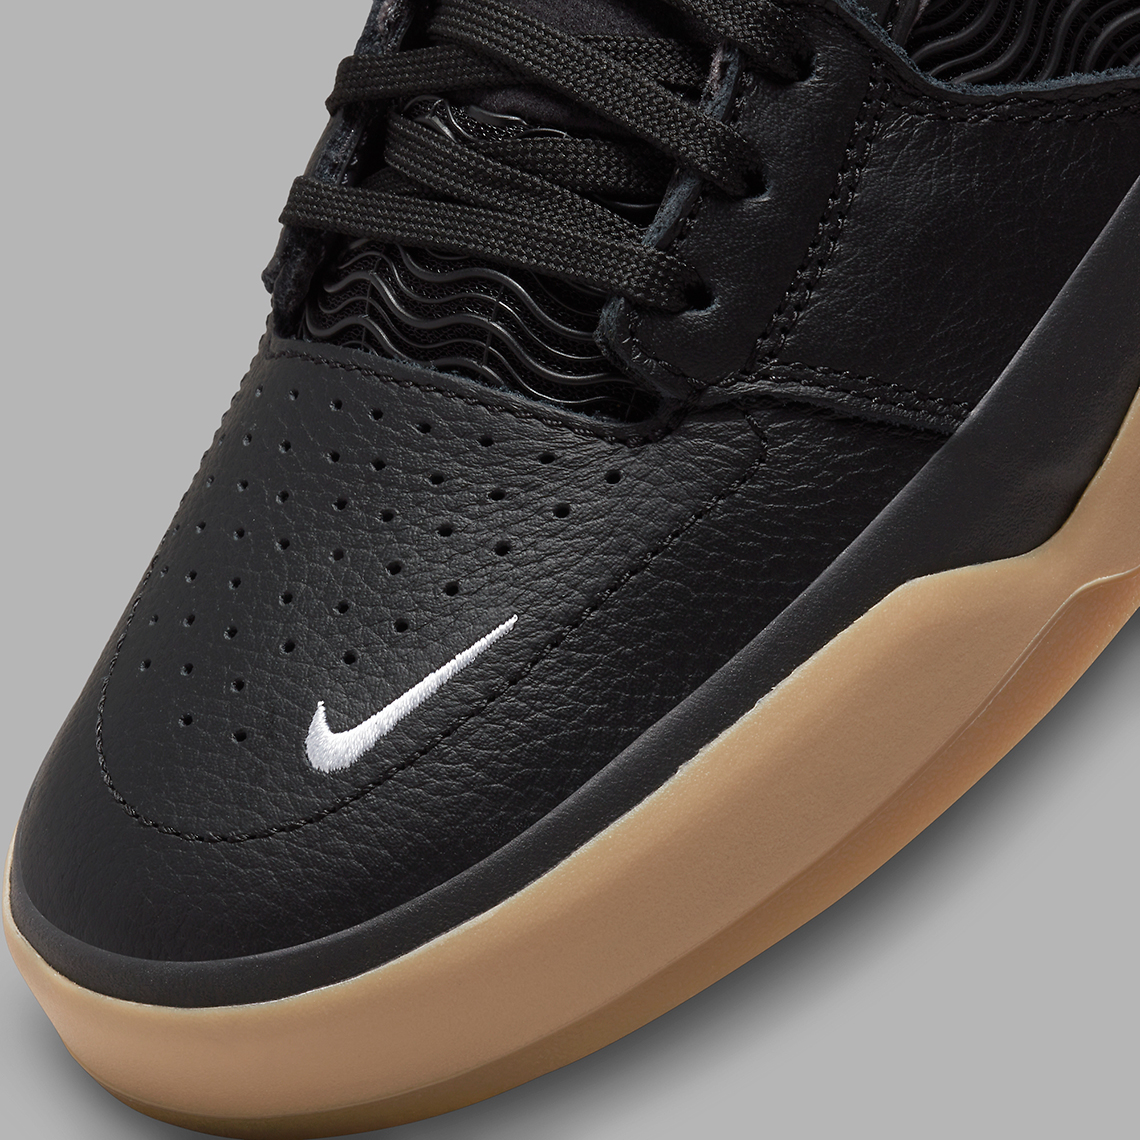 1640176494 580 El Nike SB Ishod aparece en un simple colorway negro